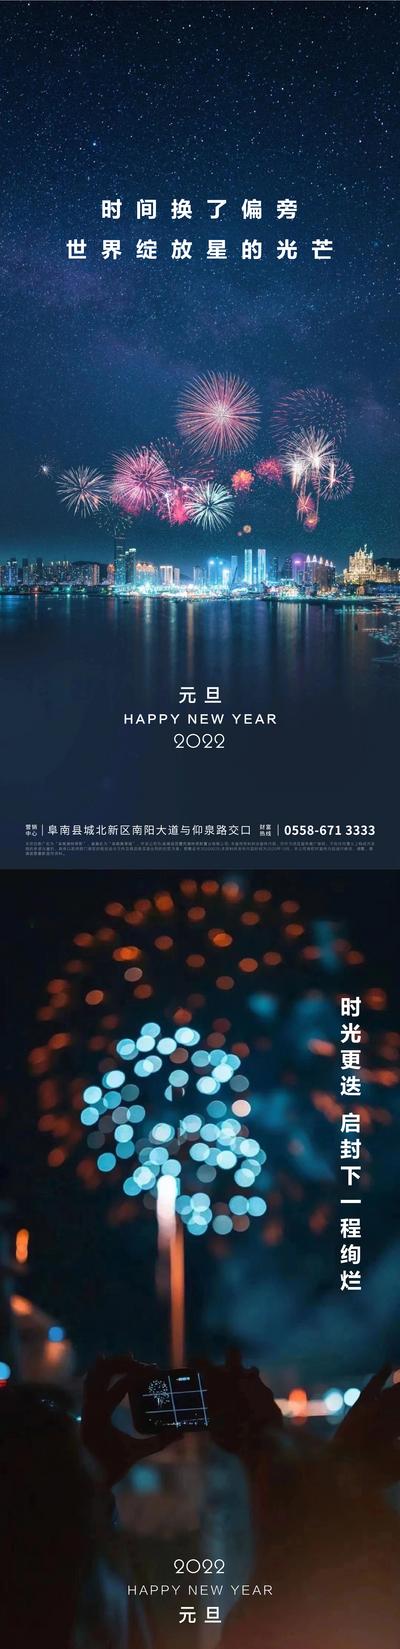 南门网 海报 房地产 中国传统节日 元旦 简约 夜景